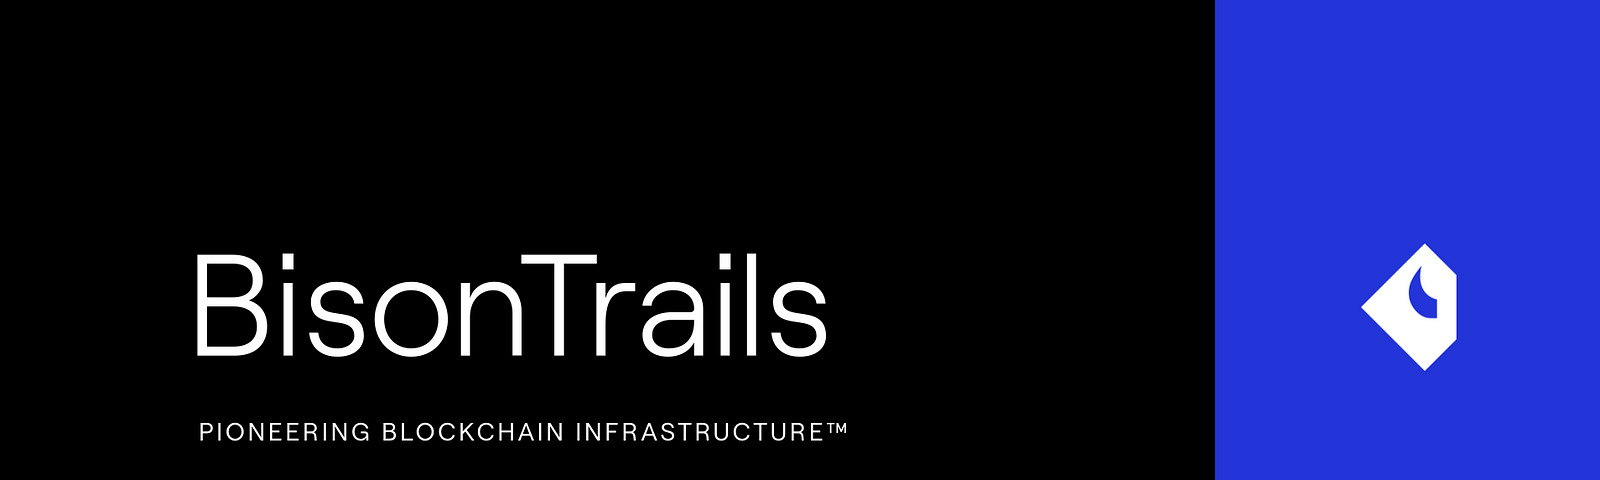 Bison Trails is Pioneering Blockchain Infrastructure™